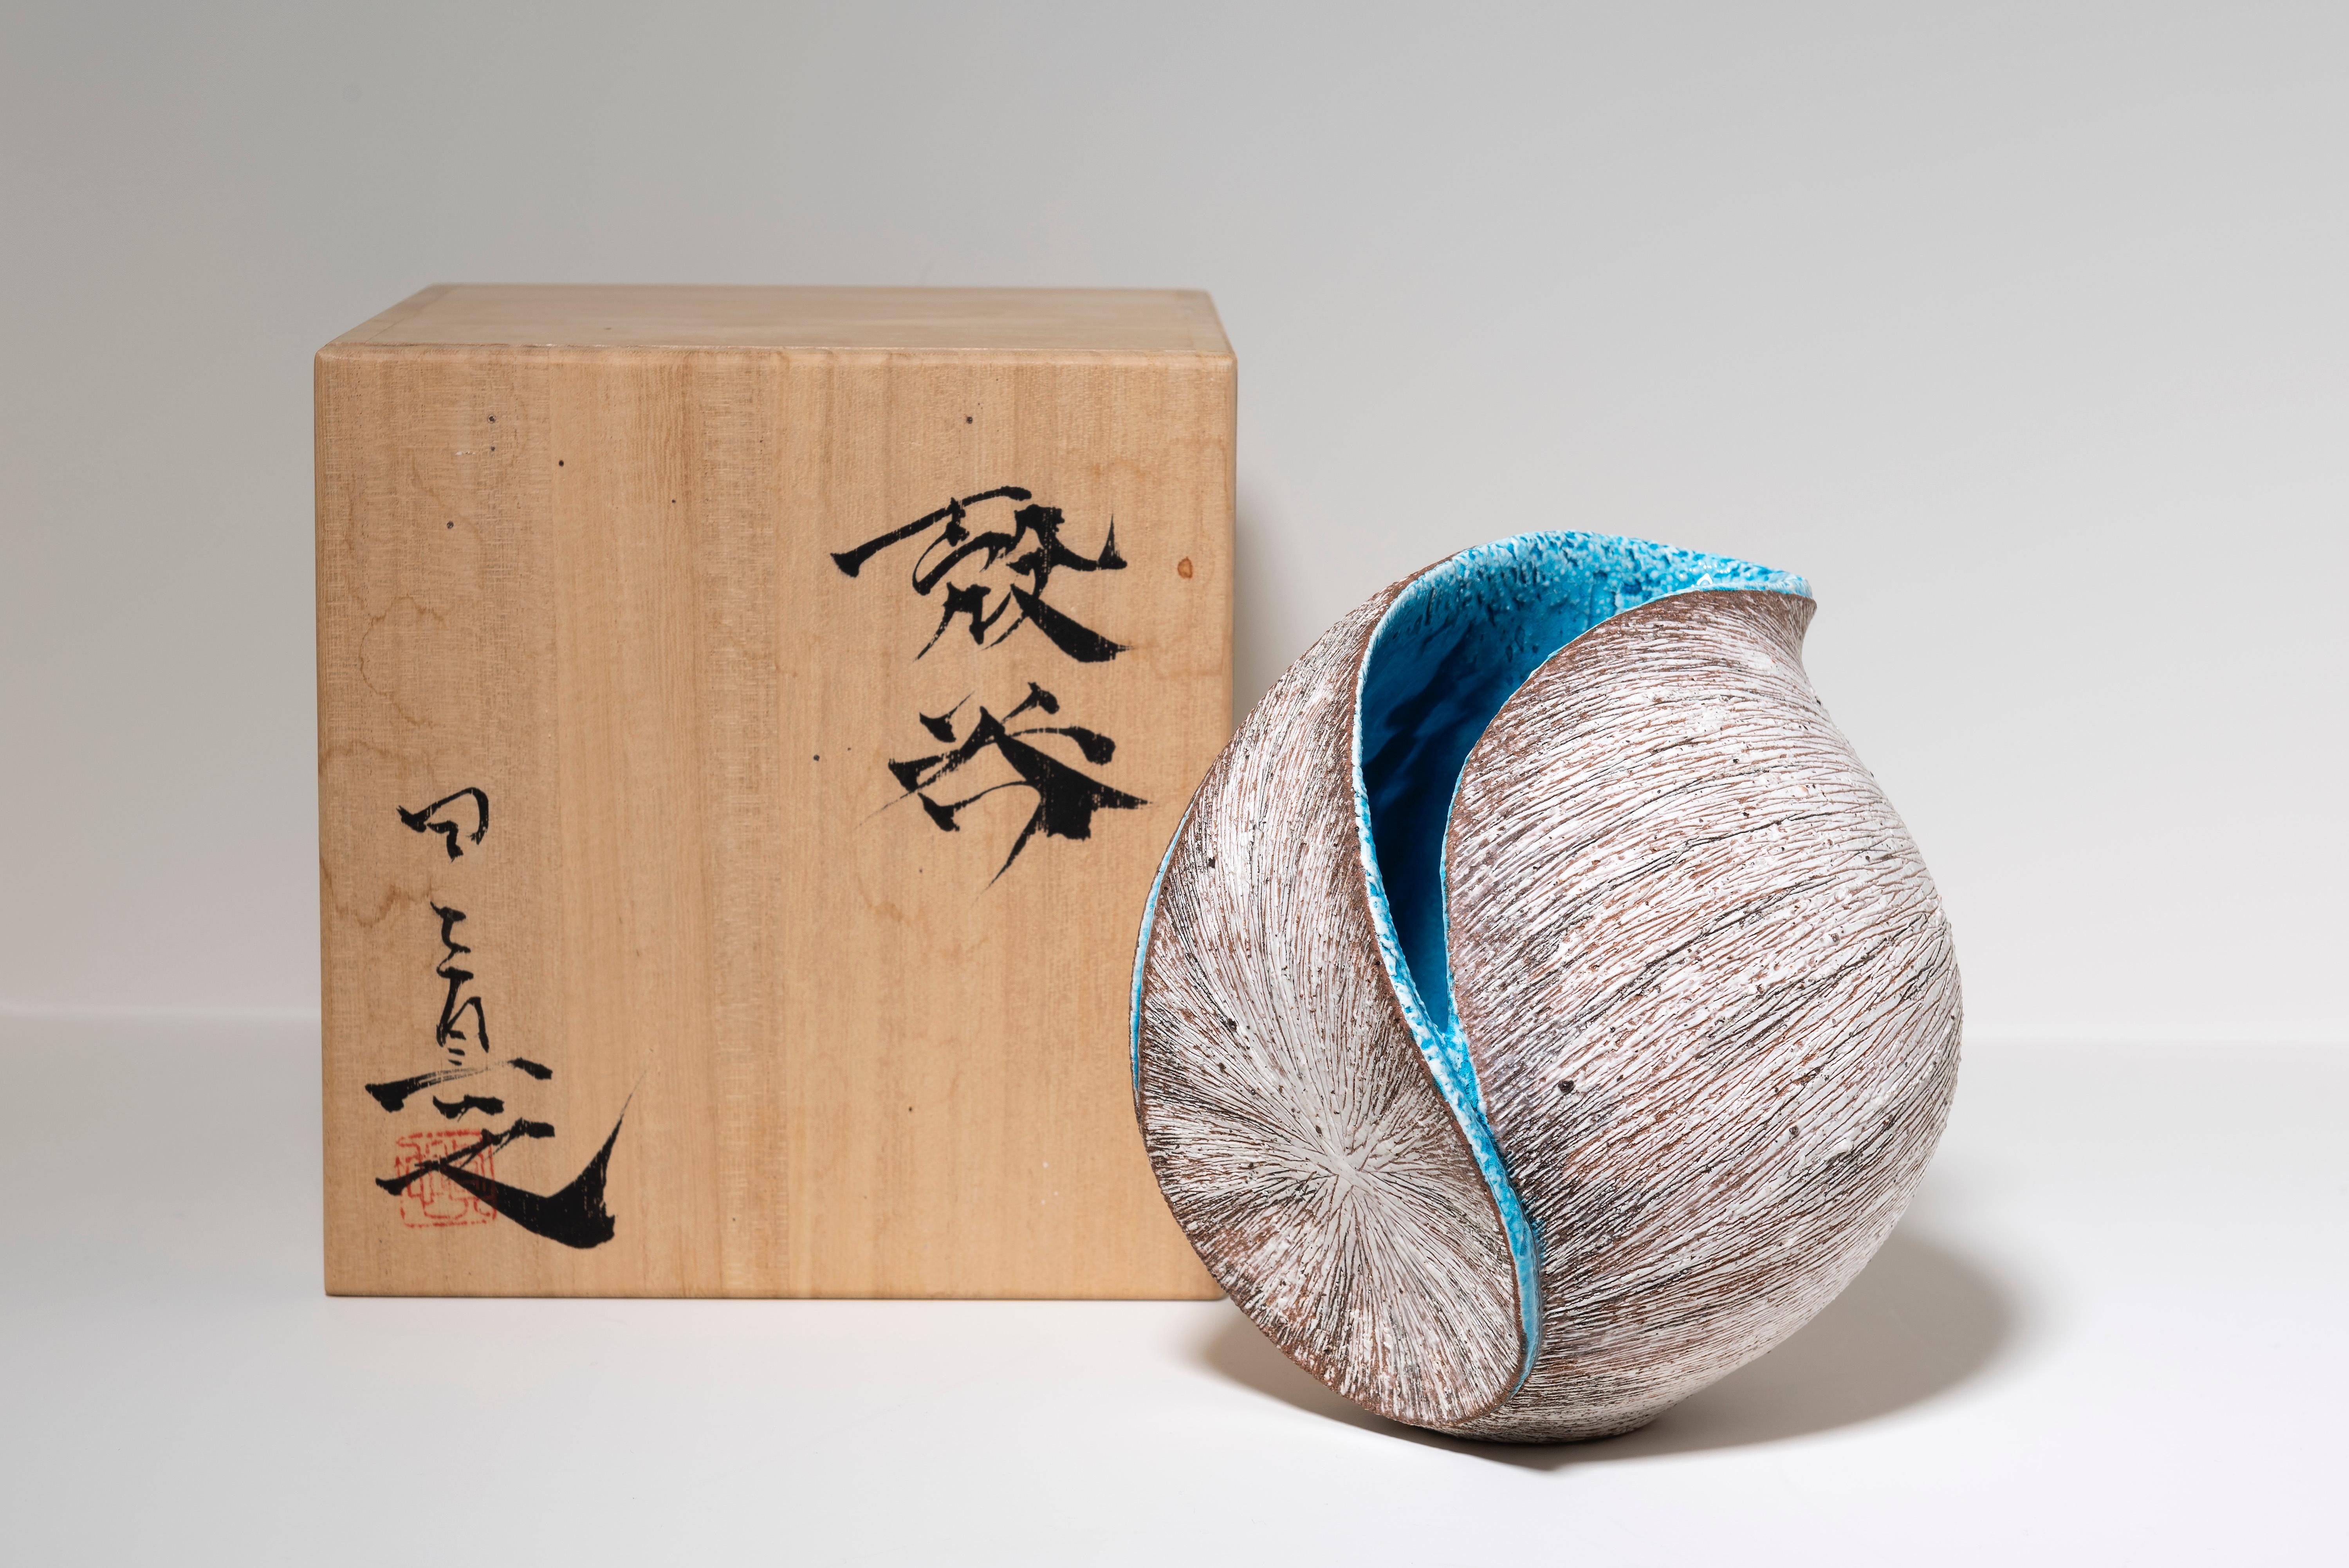 Tanoue Shinya,  est une artiste céramiste de Kyoto. Ses œuvres sont déjà exposées au musée de Kyoto et au musée d'art céramique de Hyogo, ainsi que dans des musées américains (Cincinnati, Phoenix, Crocker) dans le cadre de la Collection Horvitz